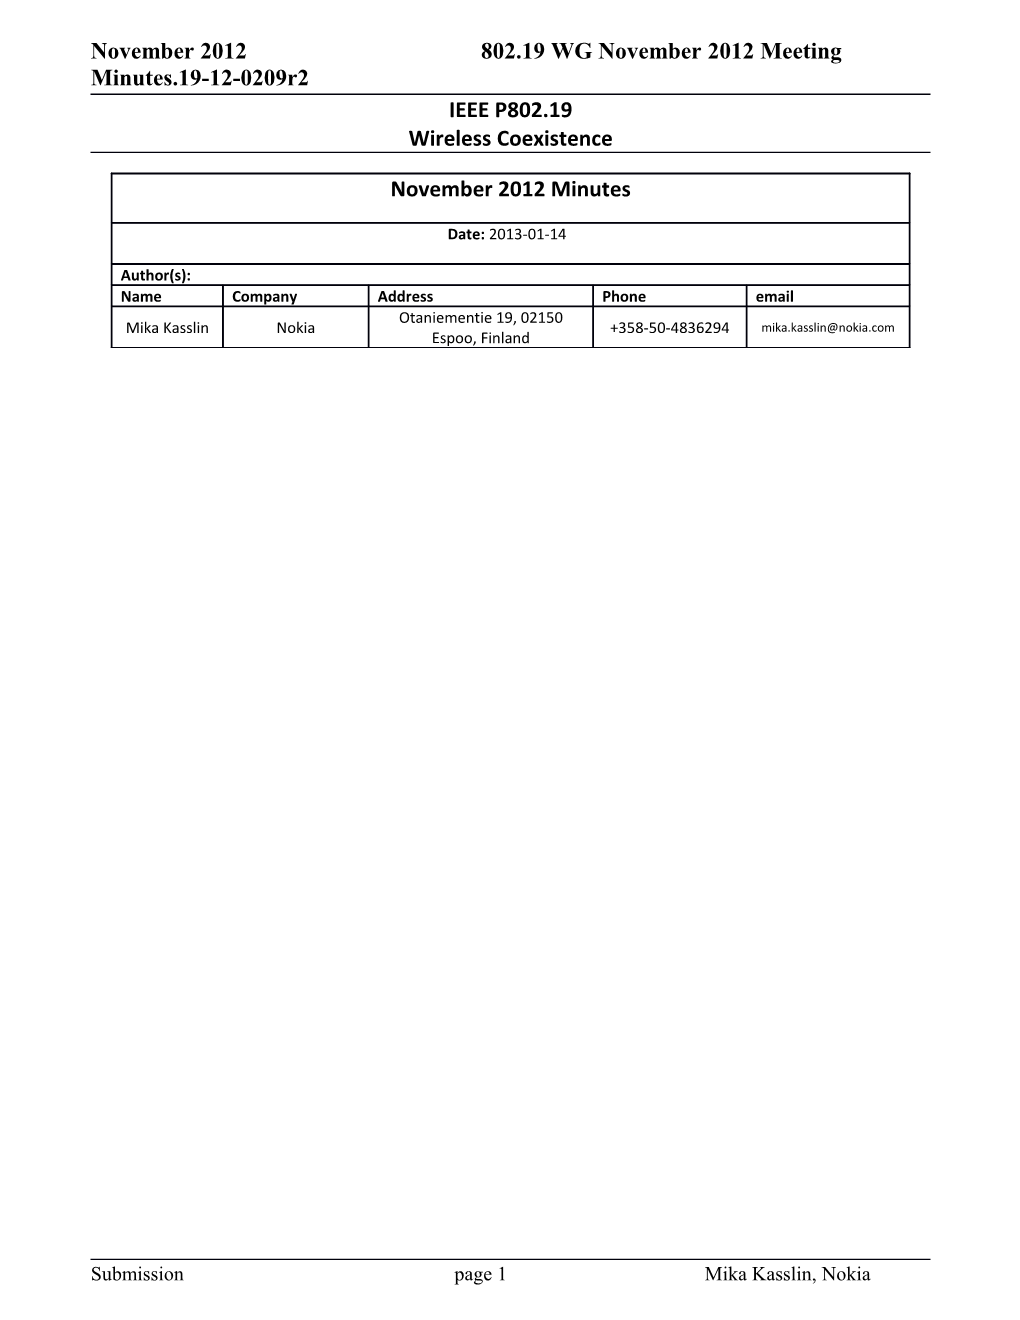 802.19 WG November 2012 Meeting Minutes